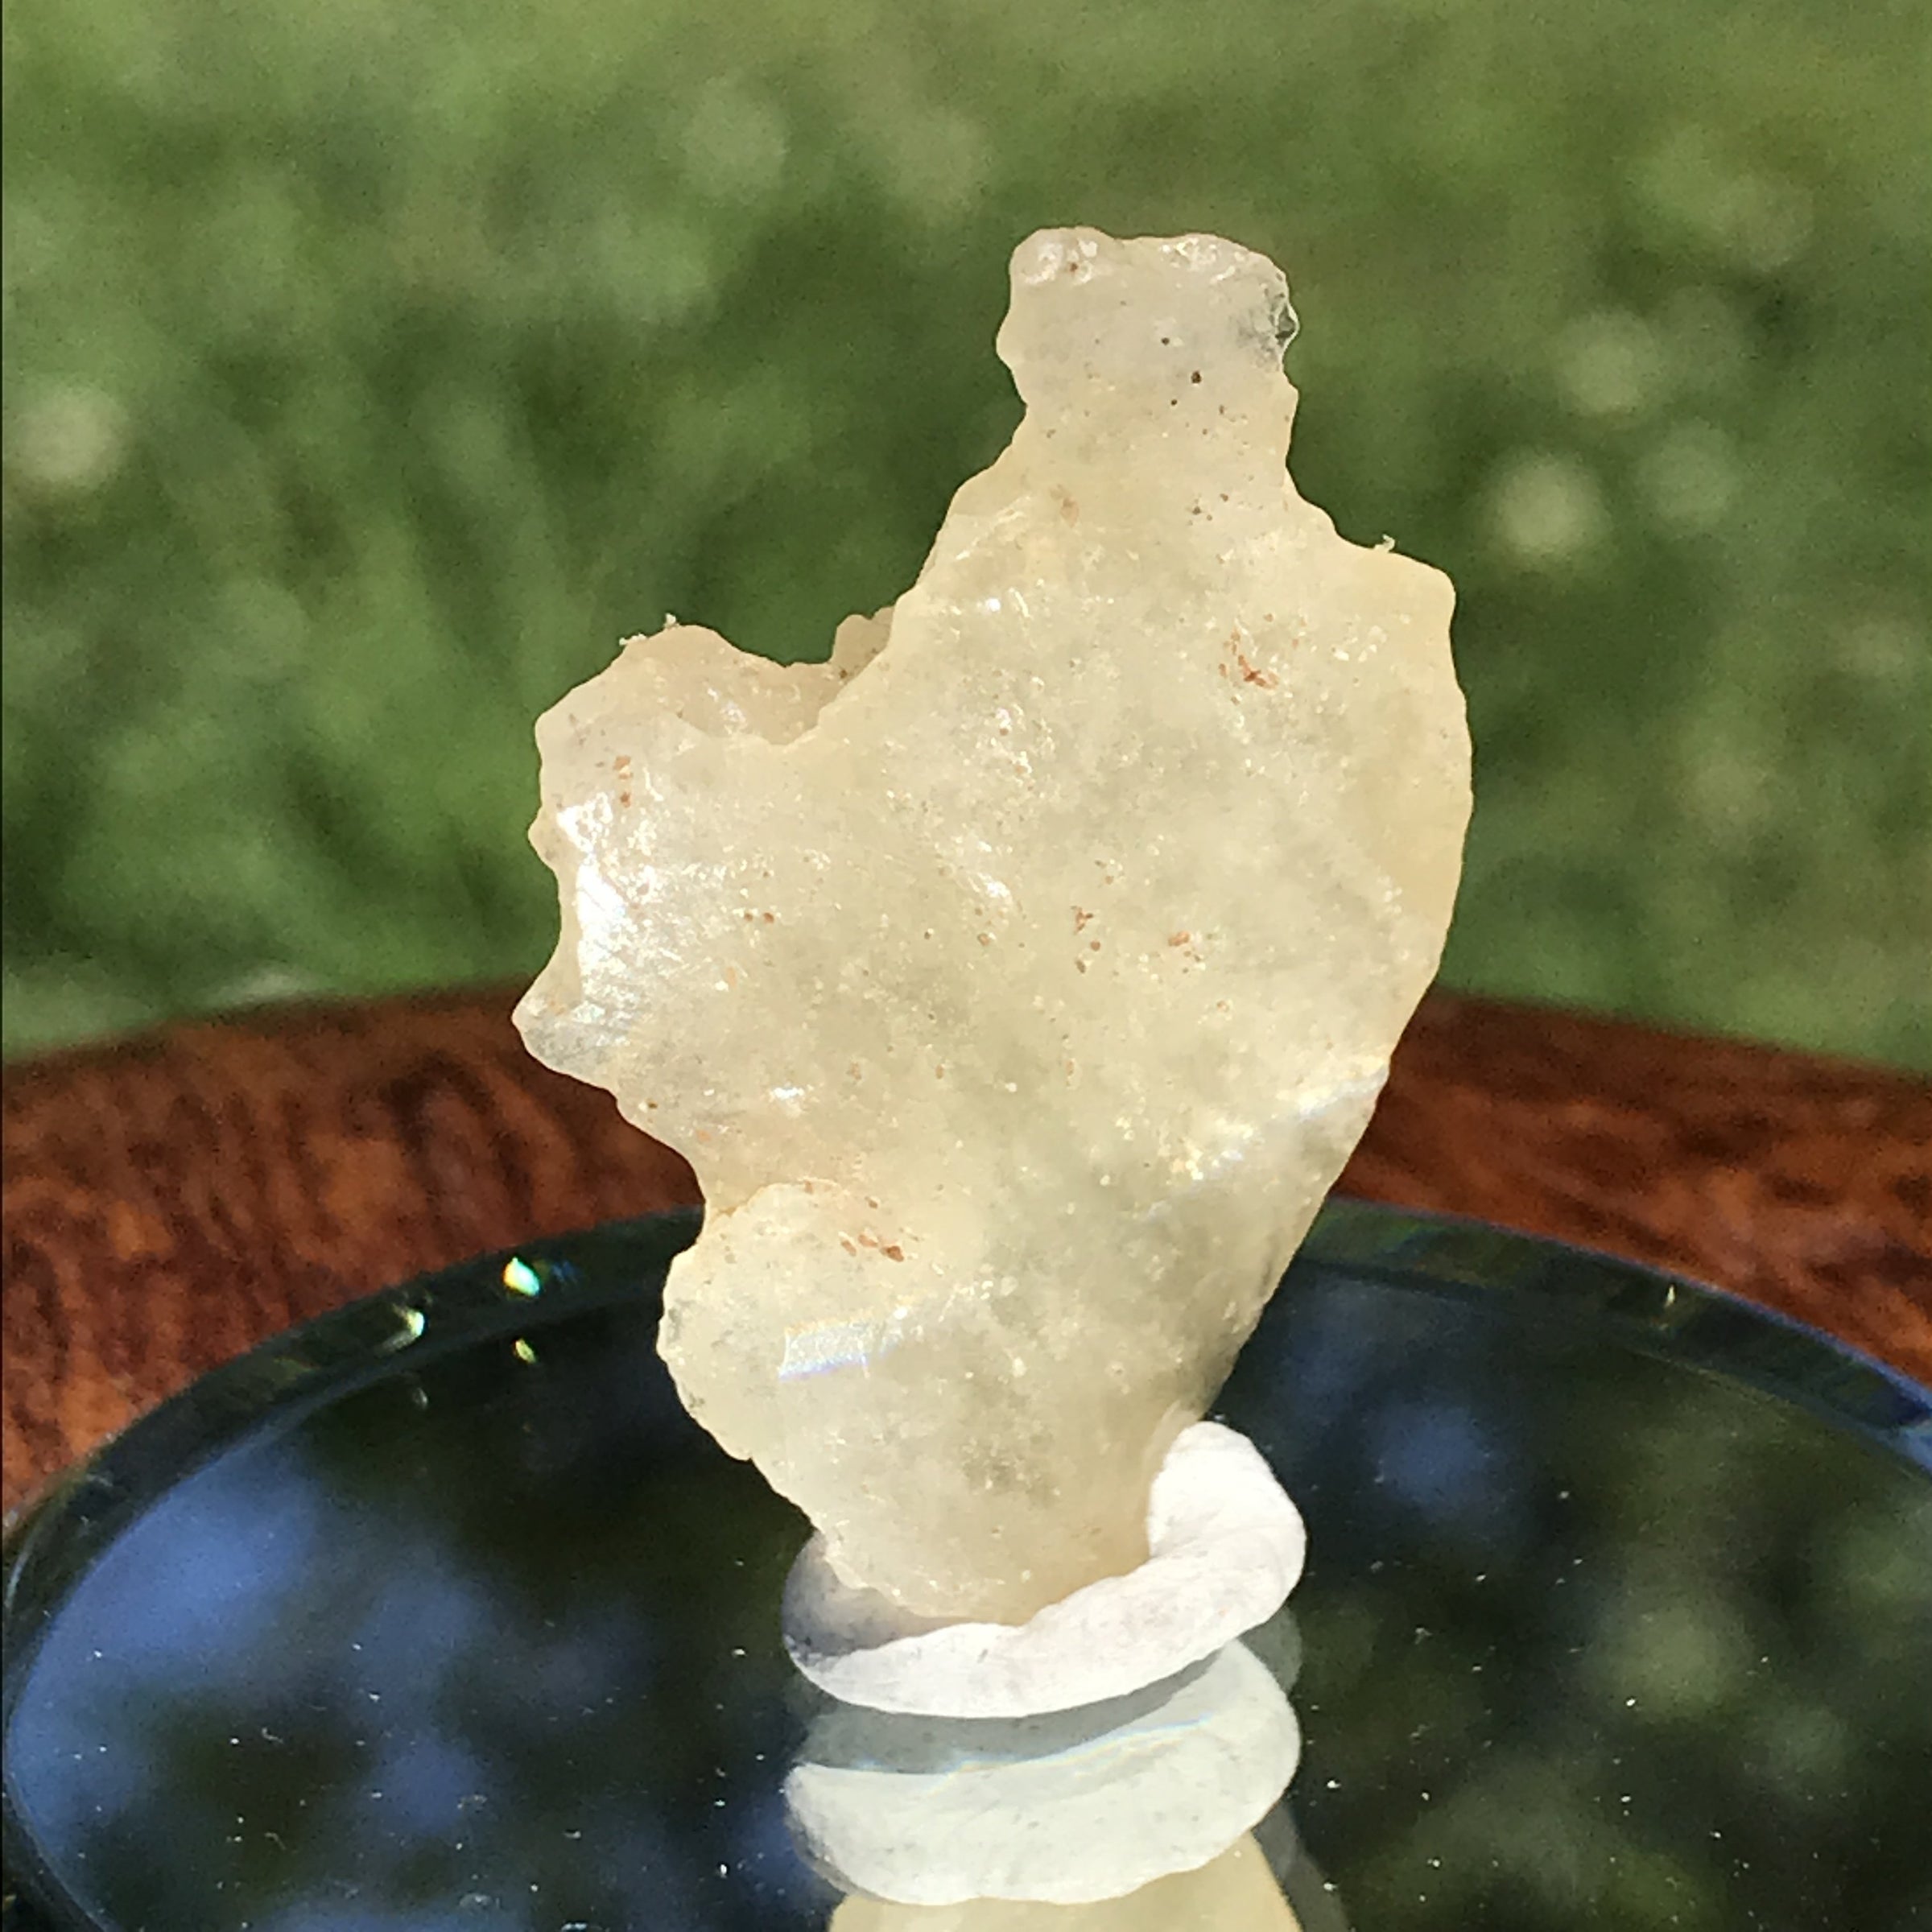 Libyan Desert Glass Tektite 4.3 grams-Moldavite Life